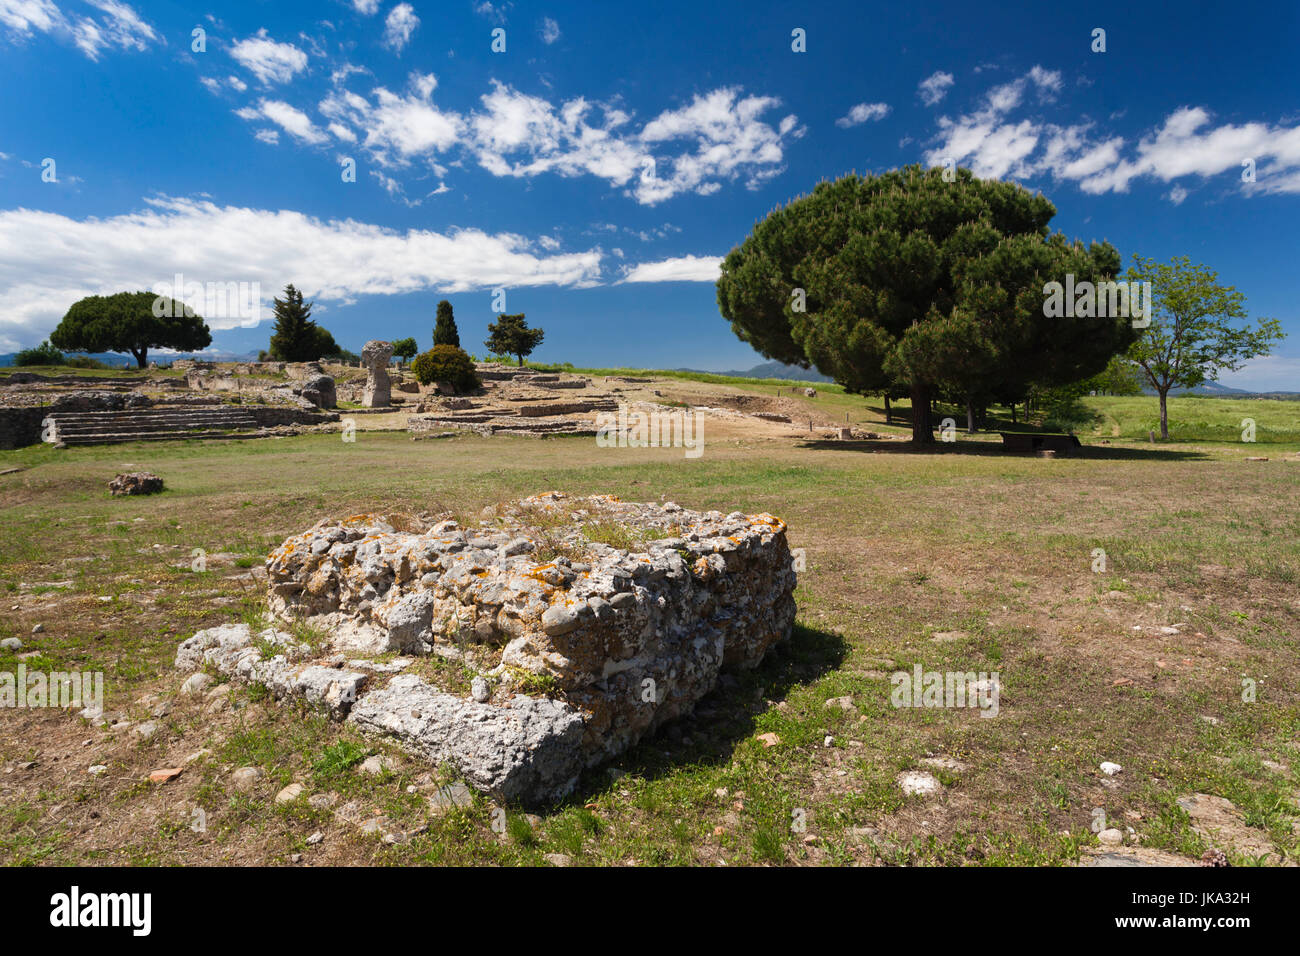 France, Corsica, Haute-Corse Department, Costa Serena Region, Aleria, Ancient Aleria, Greek and Roman ruins Stock Photo